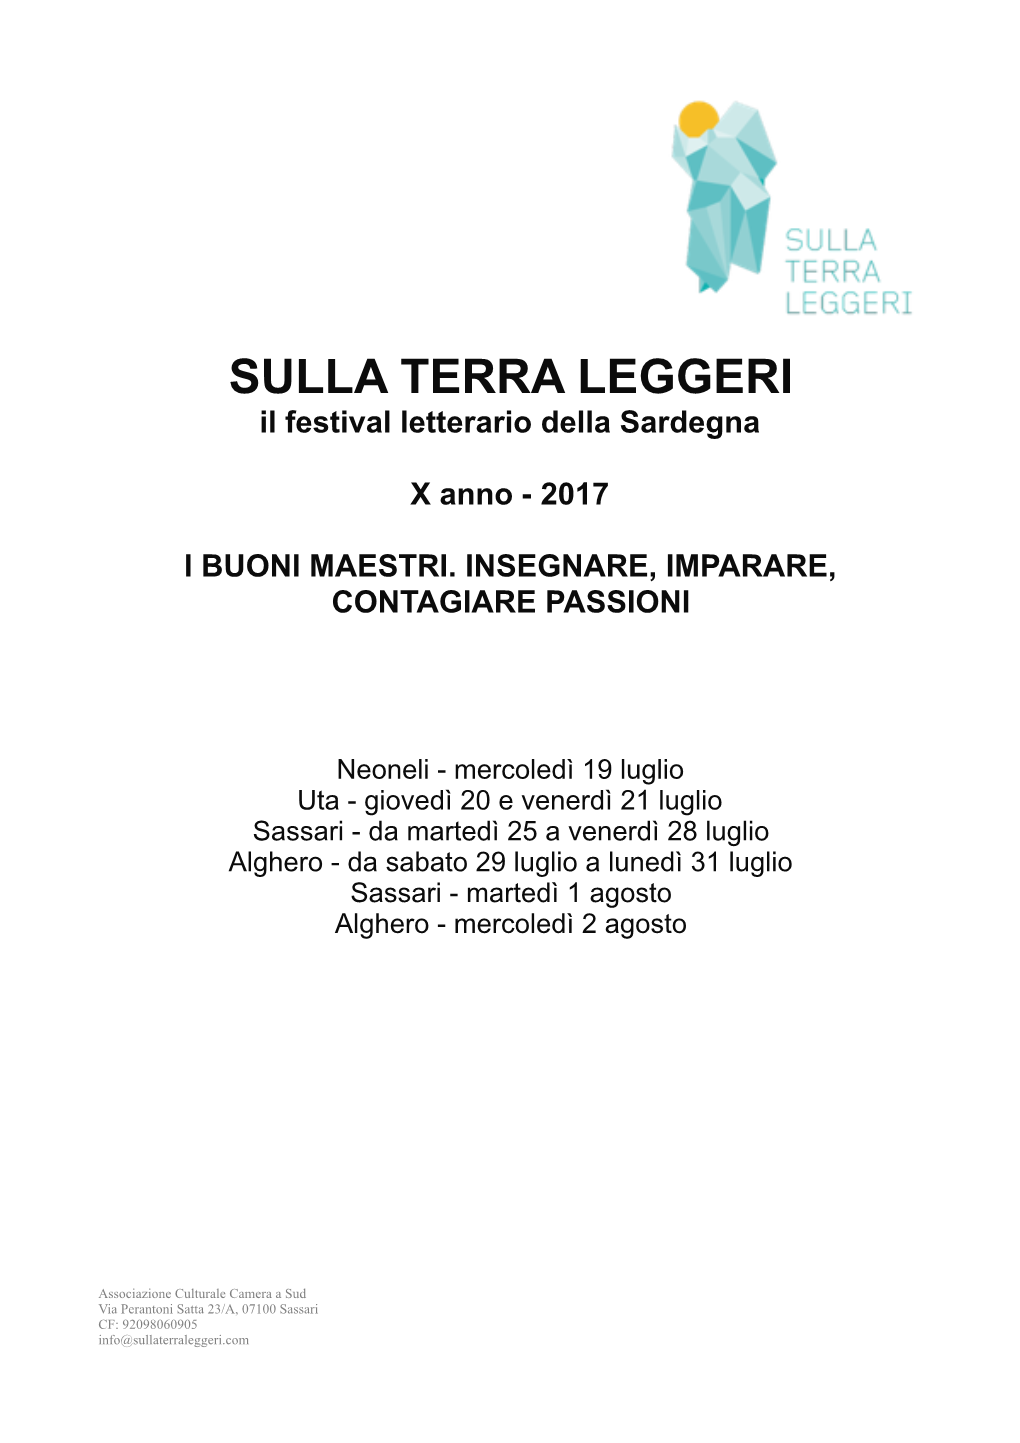 SULLA TERRA LEGGERI Il Festival Letterario Della Sardegna X Anno